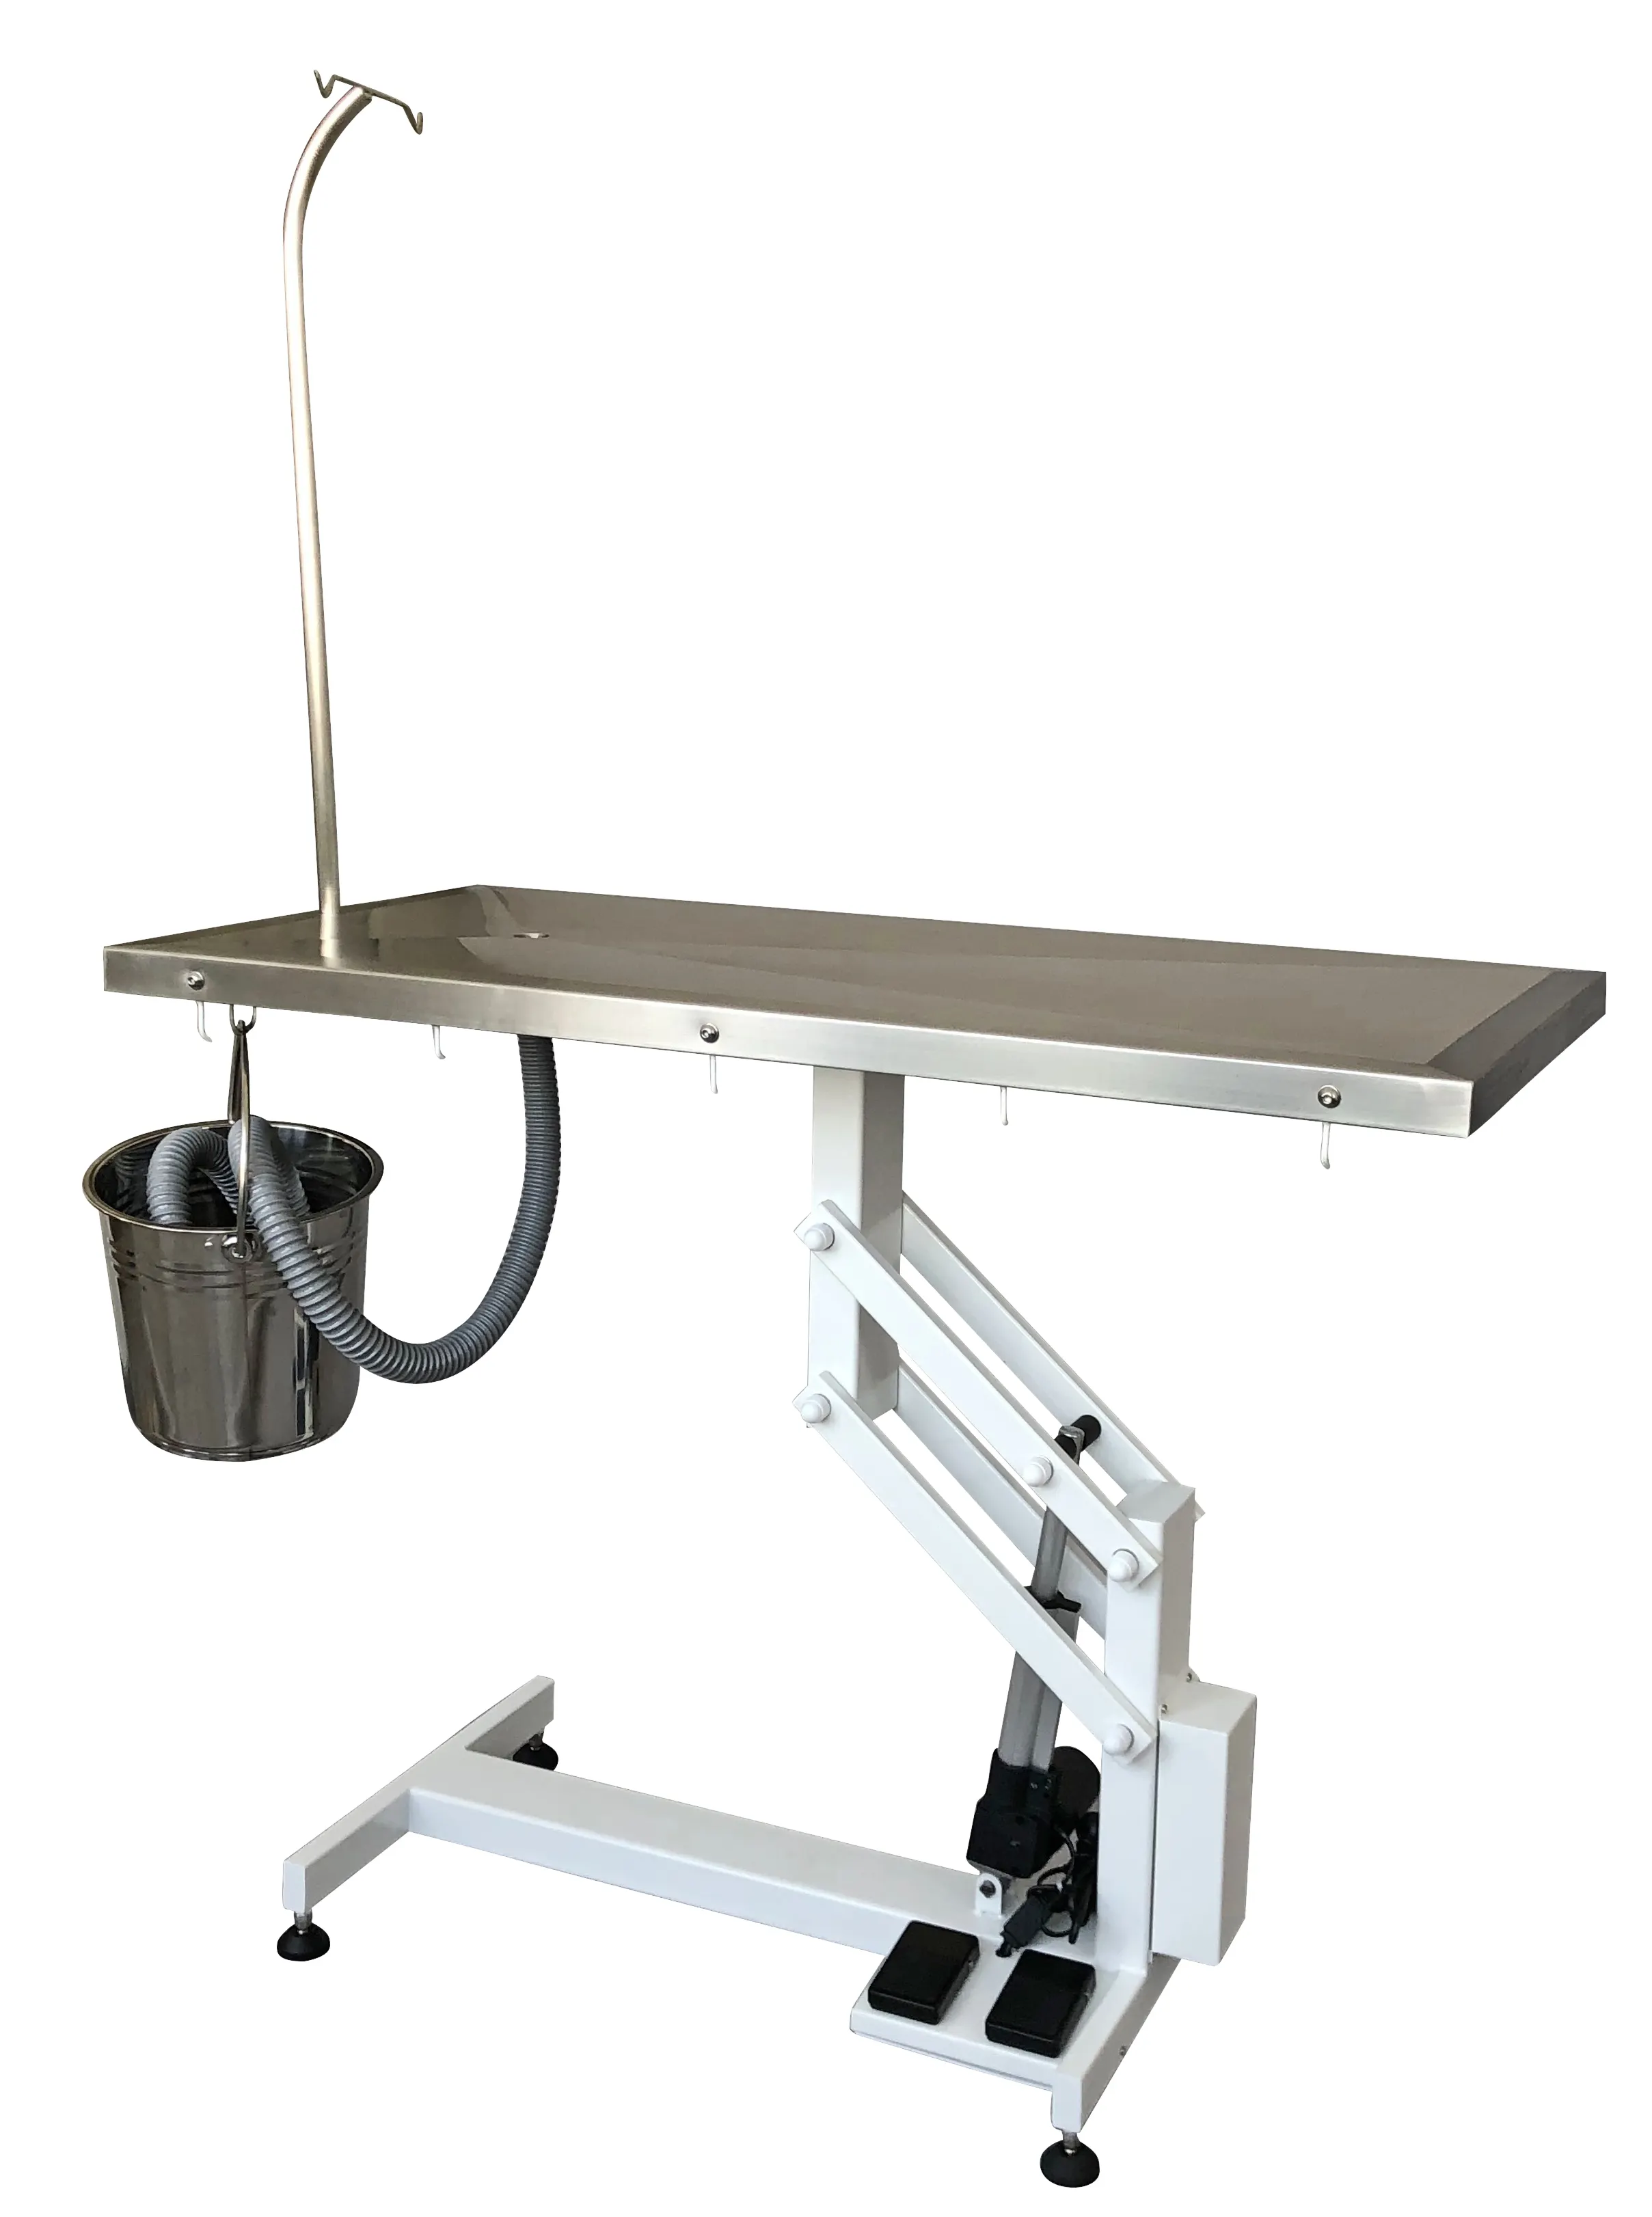 طاولة SUS304 S/S، طاولة تشريح في عيادة طبيب بيطري، طاولة تشريح كهربائية كلاسيكية على شكل حرف Z لمستشفي الحيوانات الأليفة